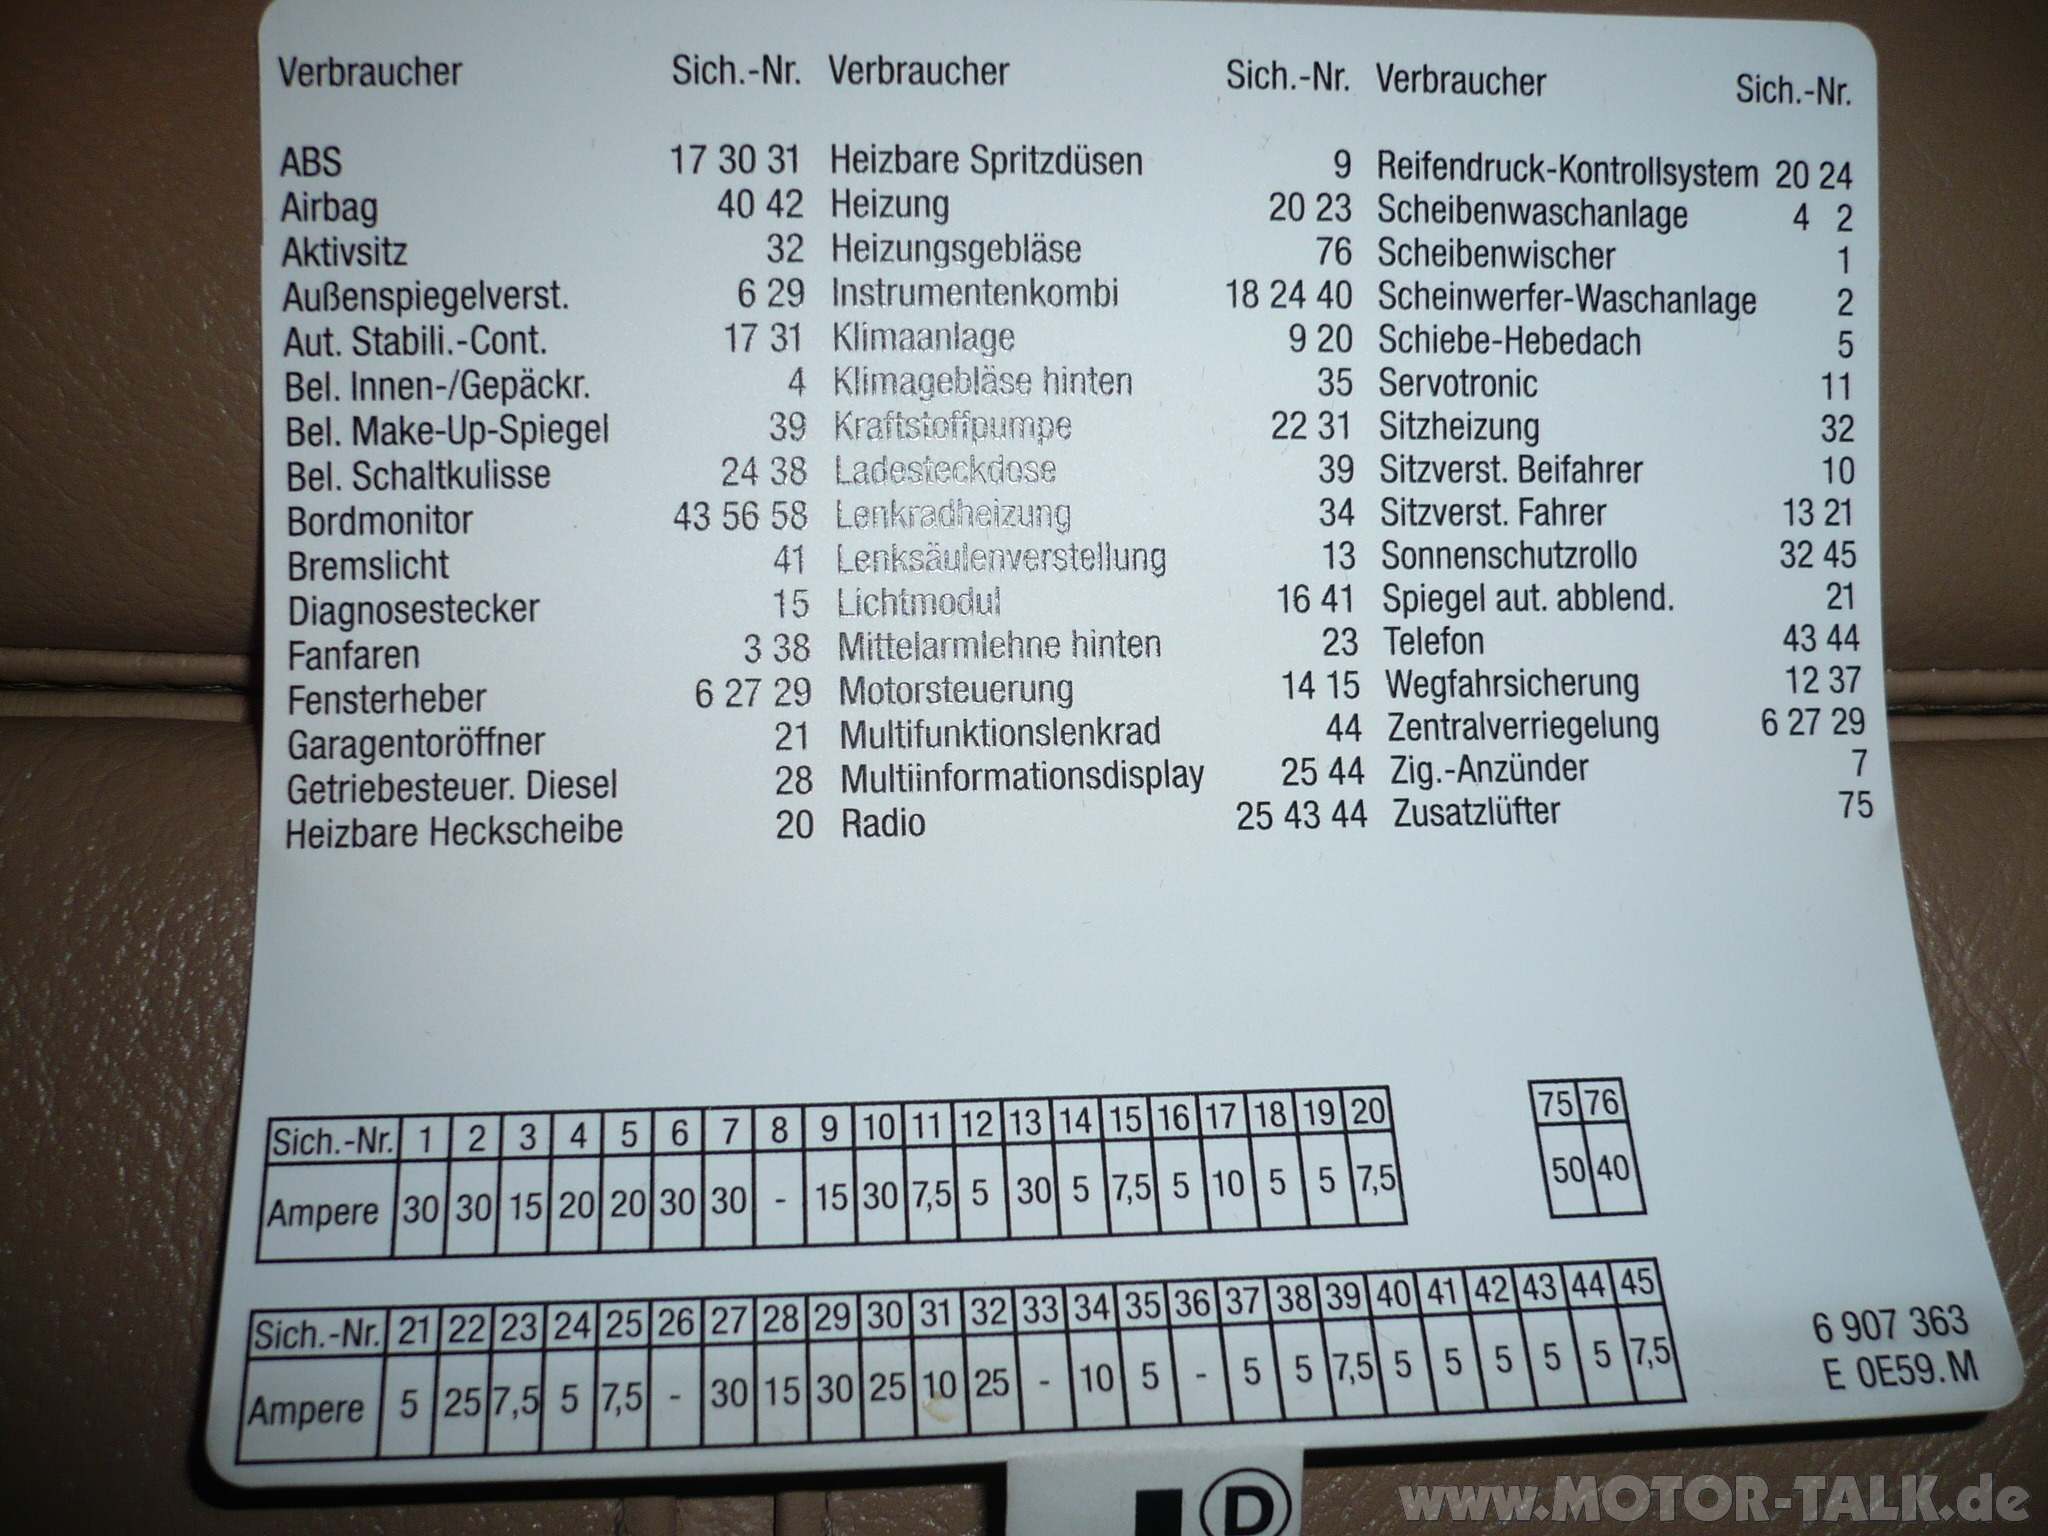 Sicherung-handschuhfach : Sicherungen : BMW 5er E39 ... mini r56 fuse box 